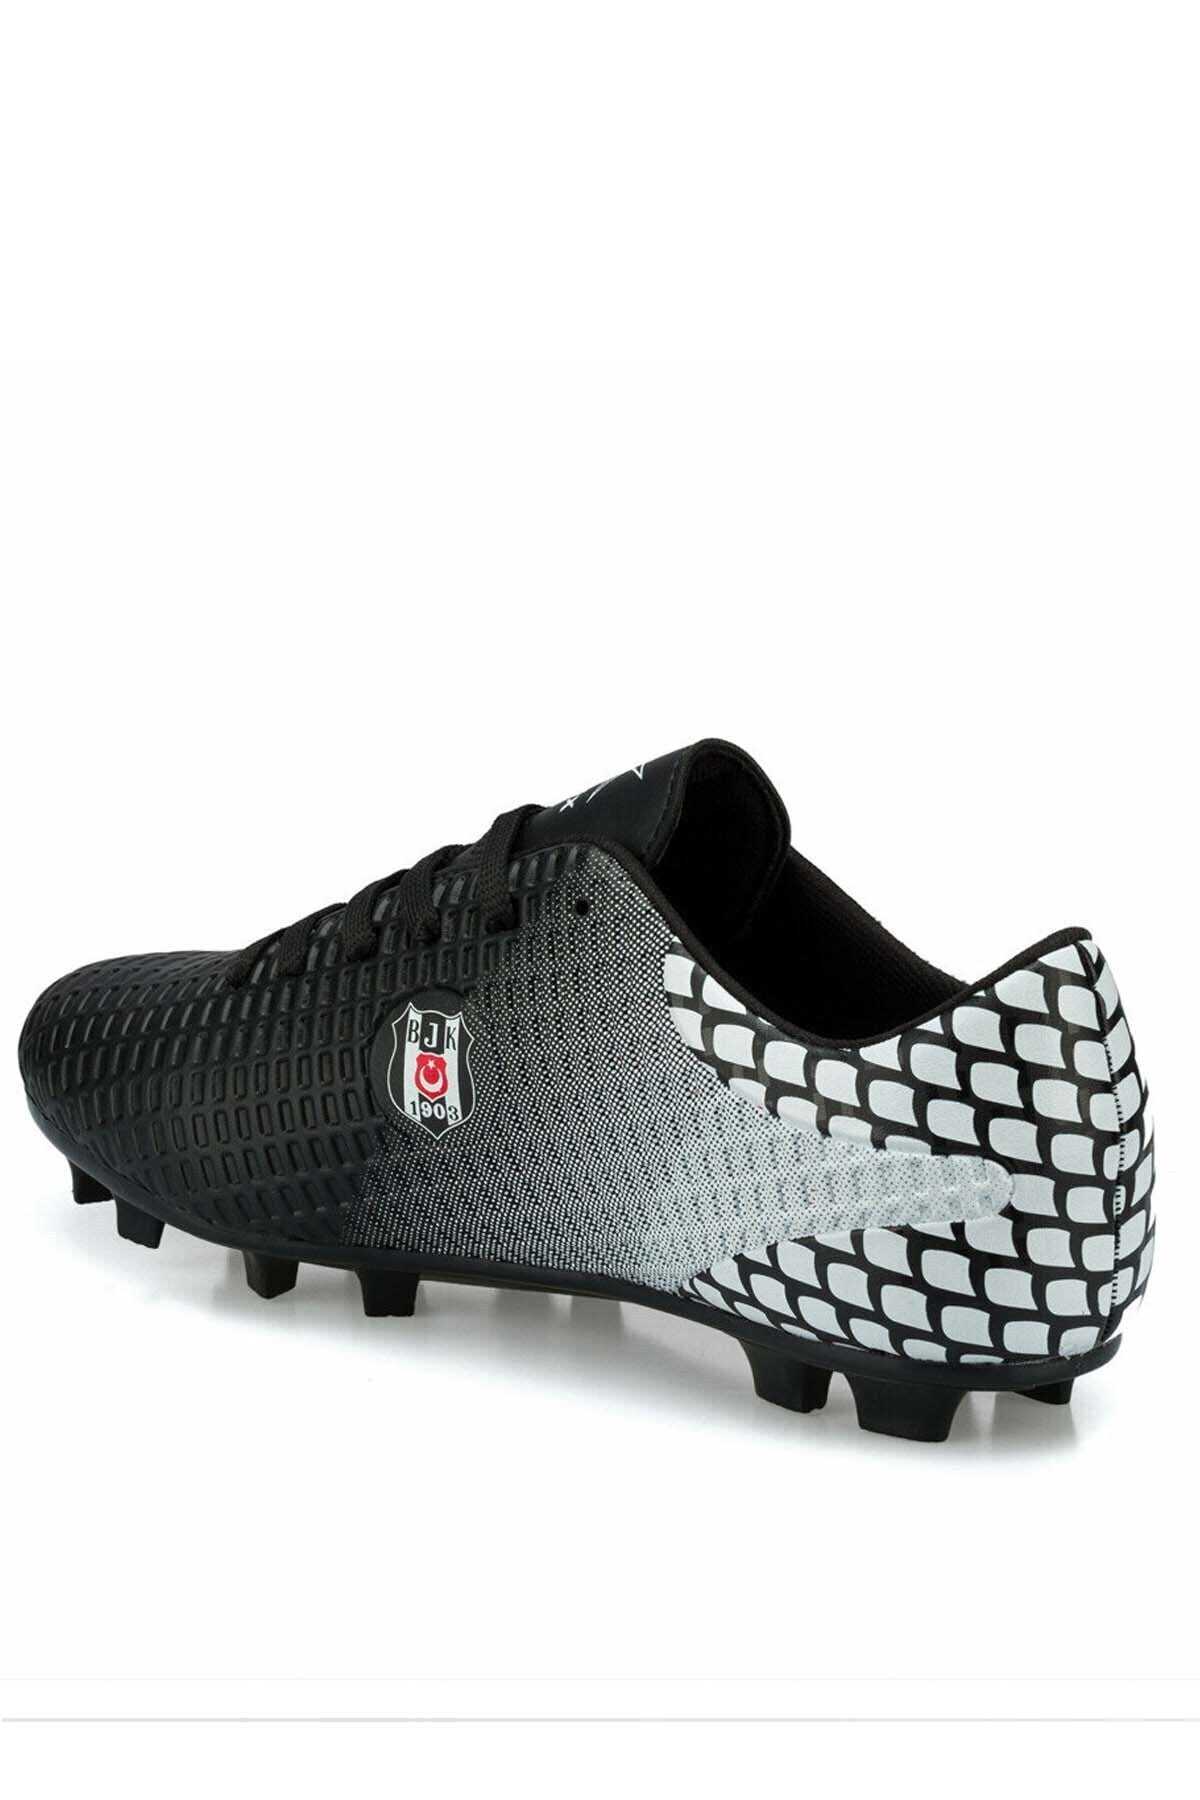 کفش فوتبال مردانه چاپ دار مشکی برند Kinetix